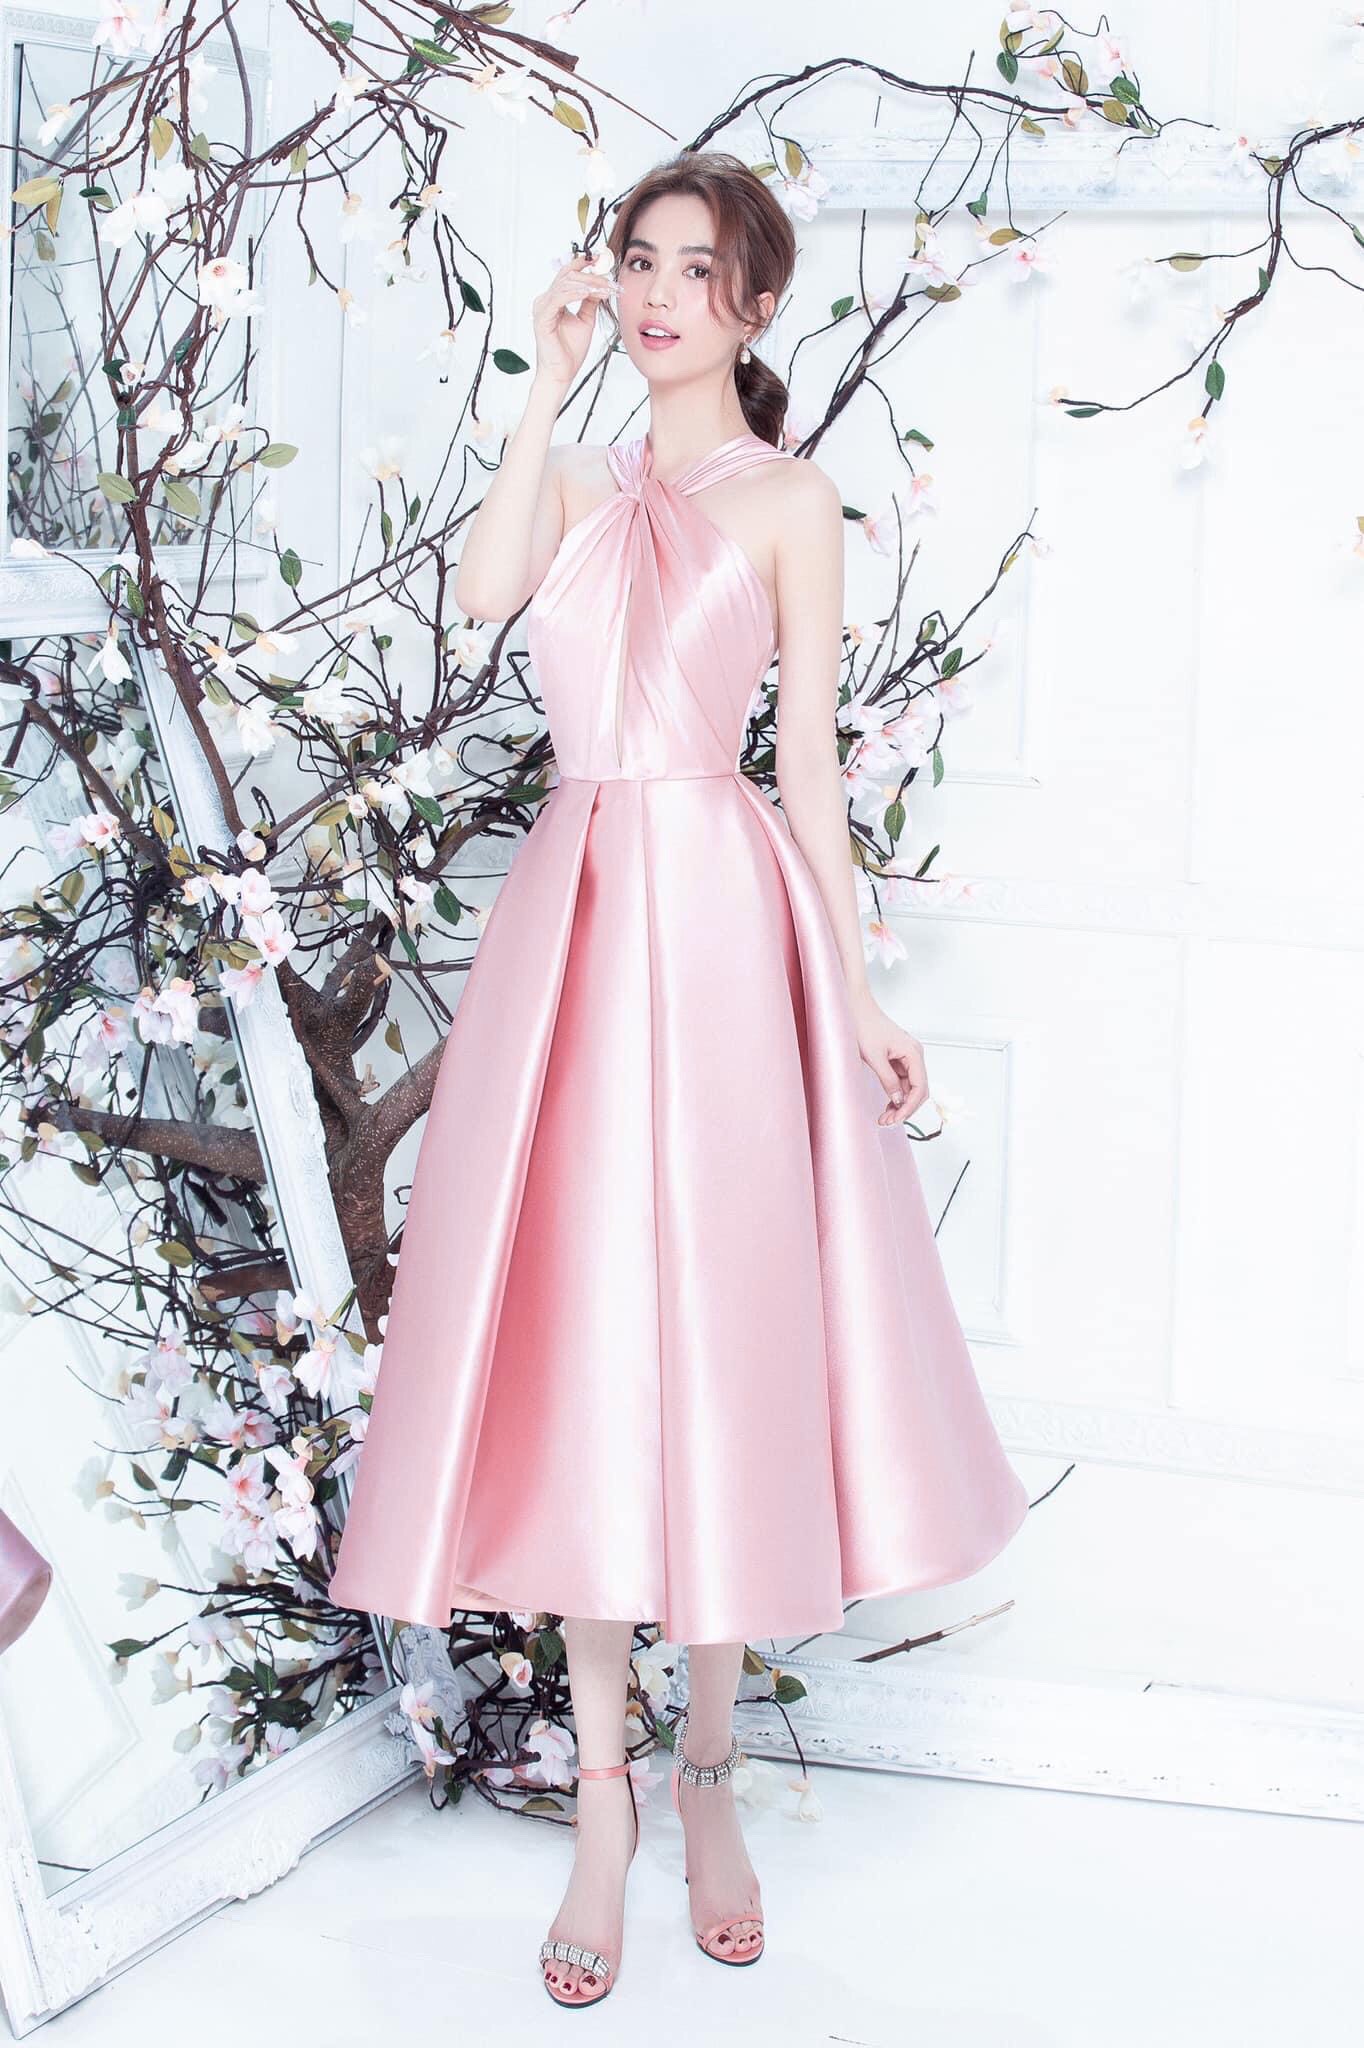 Váy Xòe Hở Lưng Cổ Yếm - khuyến mại giá rẻ mới nhất tháng 3【Tốp #1 Bán Chạy】